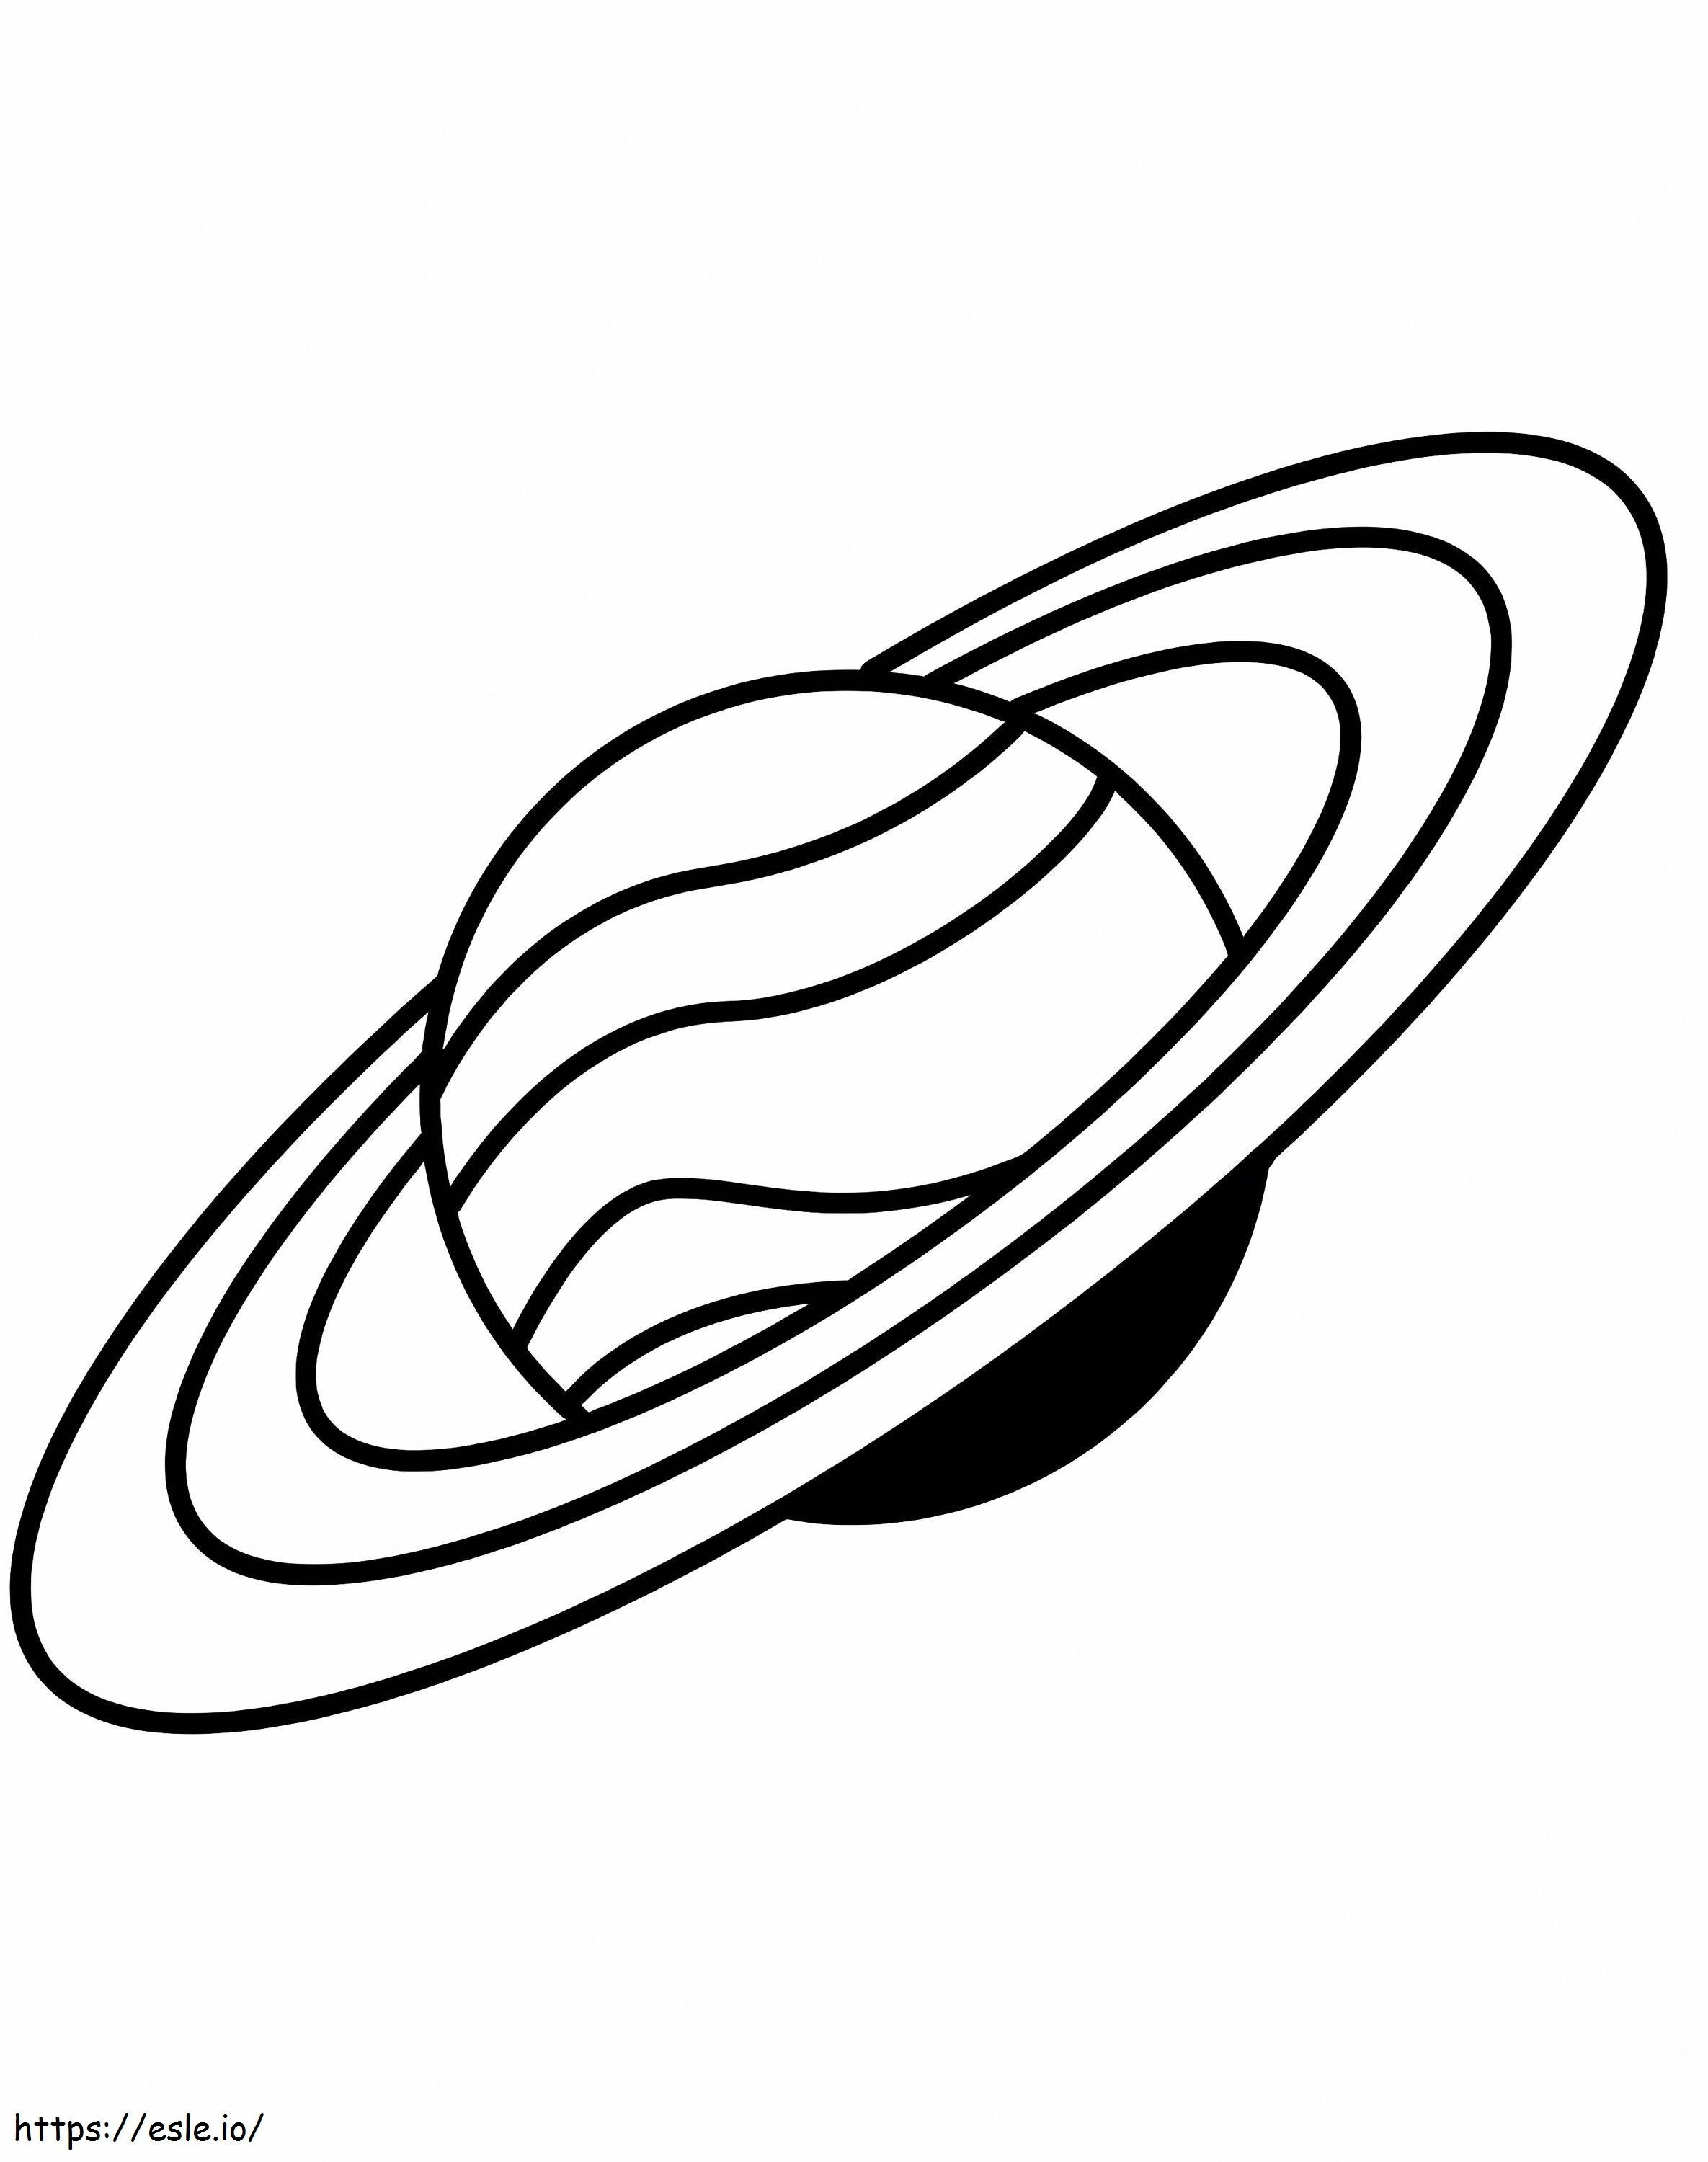 Saturno simple 1 para colorear